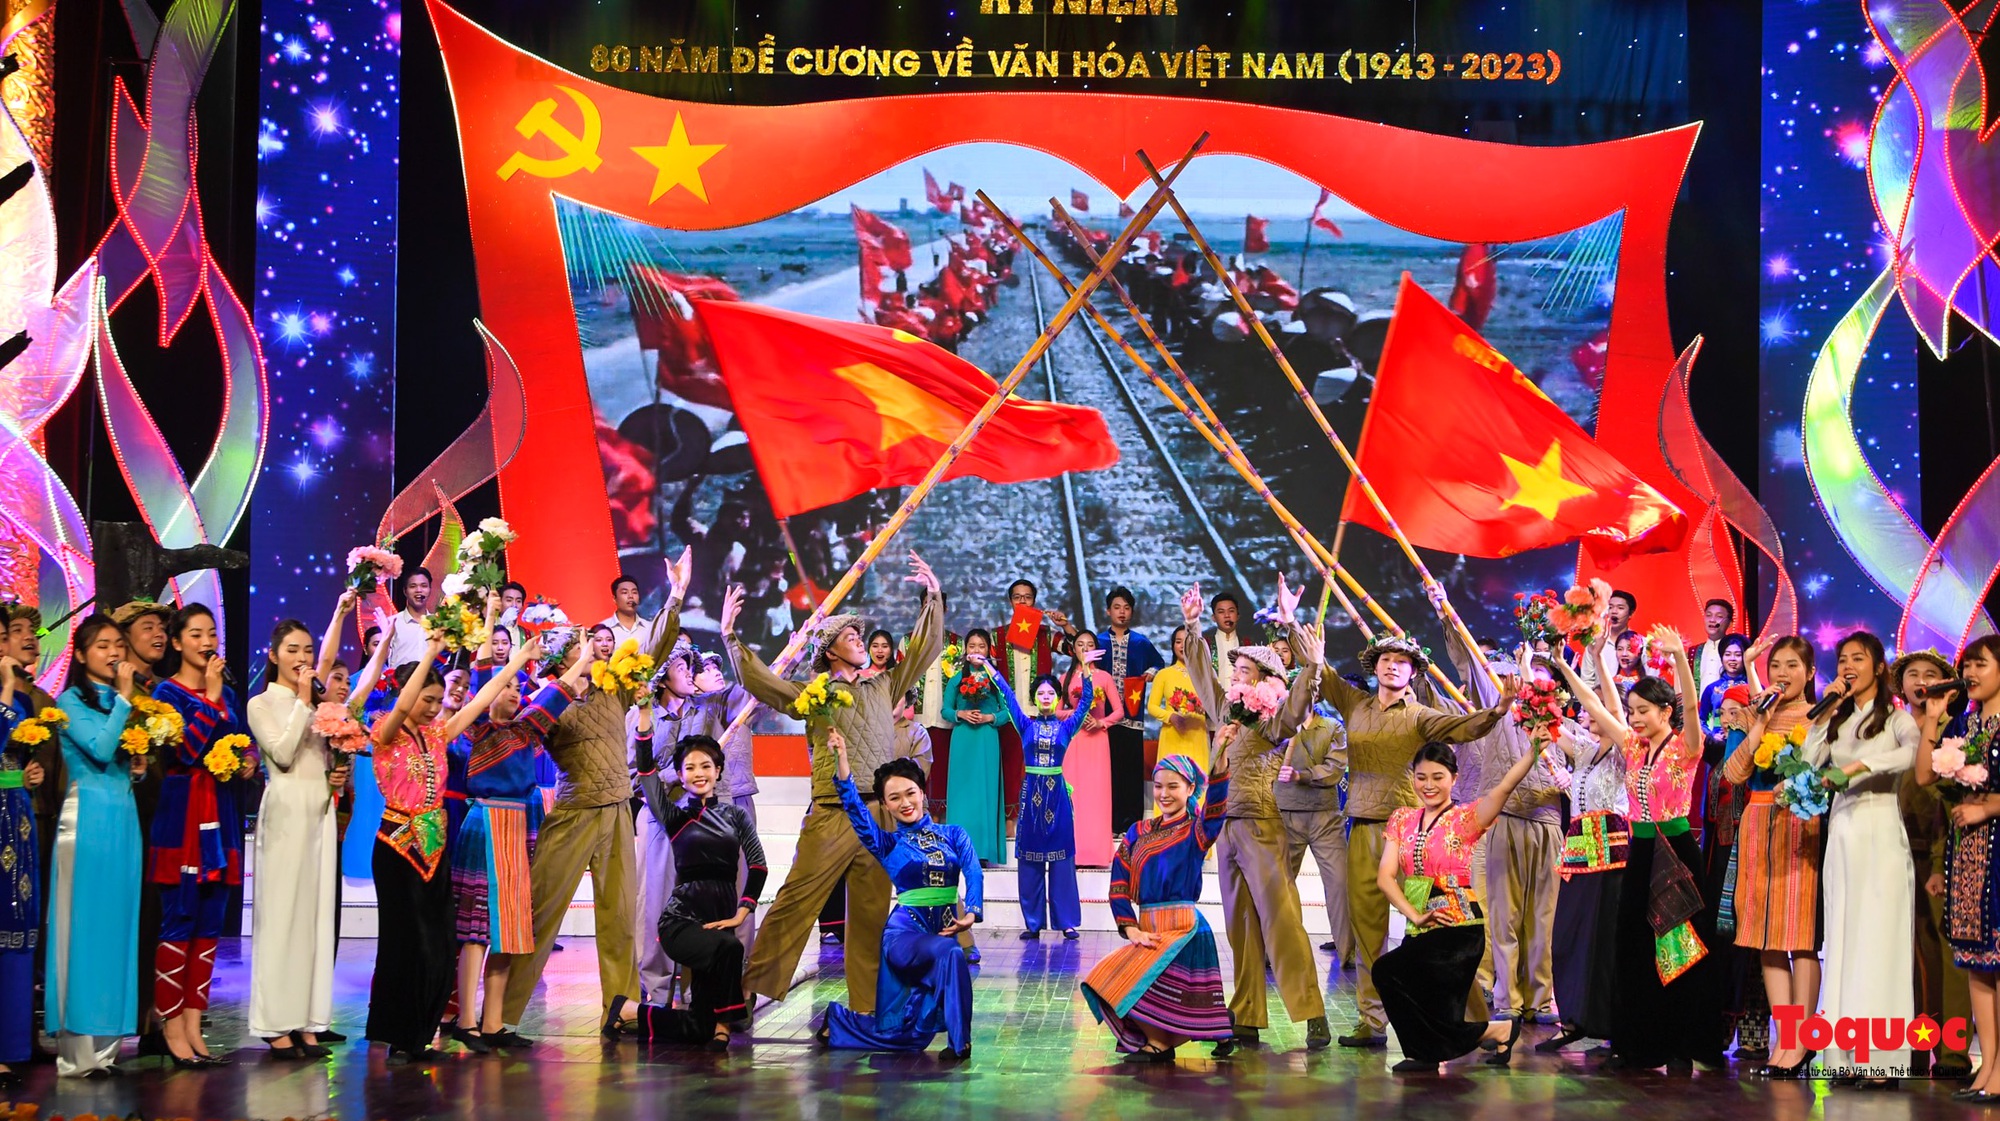 Chùm ảnh: Lễ kỷ niệm và chương trình nghệ thuật đặc biệt kỷ niệm 80 năm ra đời Đề cương văn hóa Việt Nam - Ảnh 15.